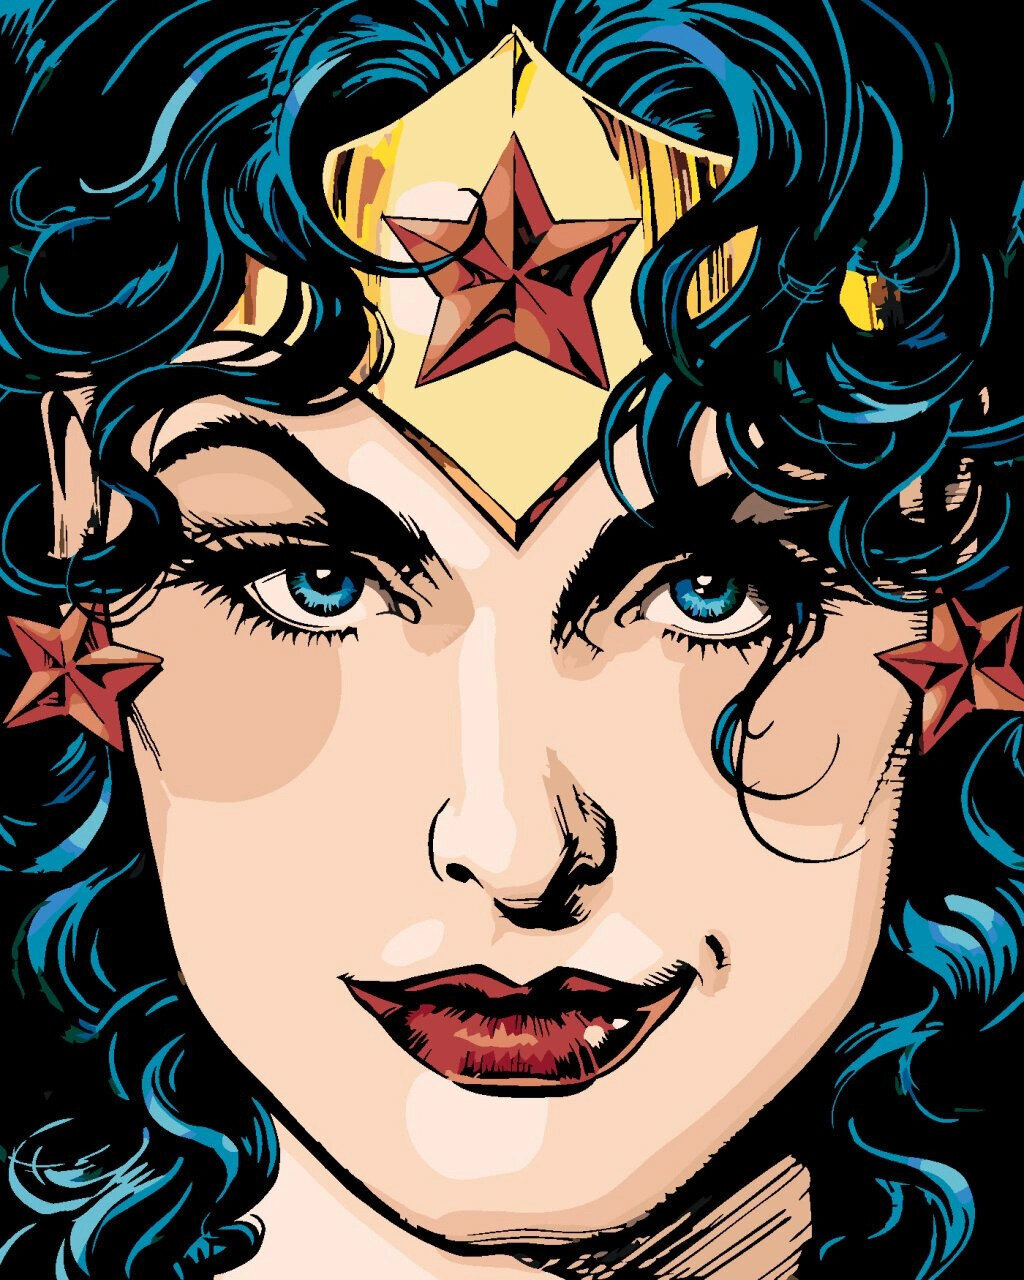 Festés számok szerint Zuty Festés számok szerint Wonder Woman képregény borítója